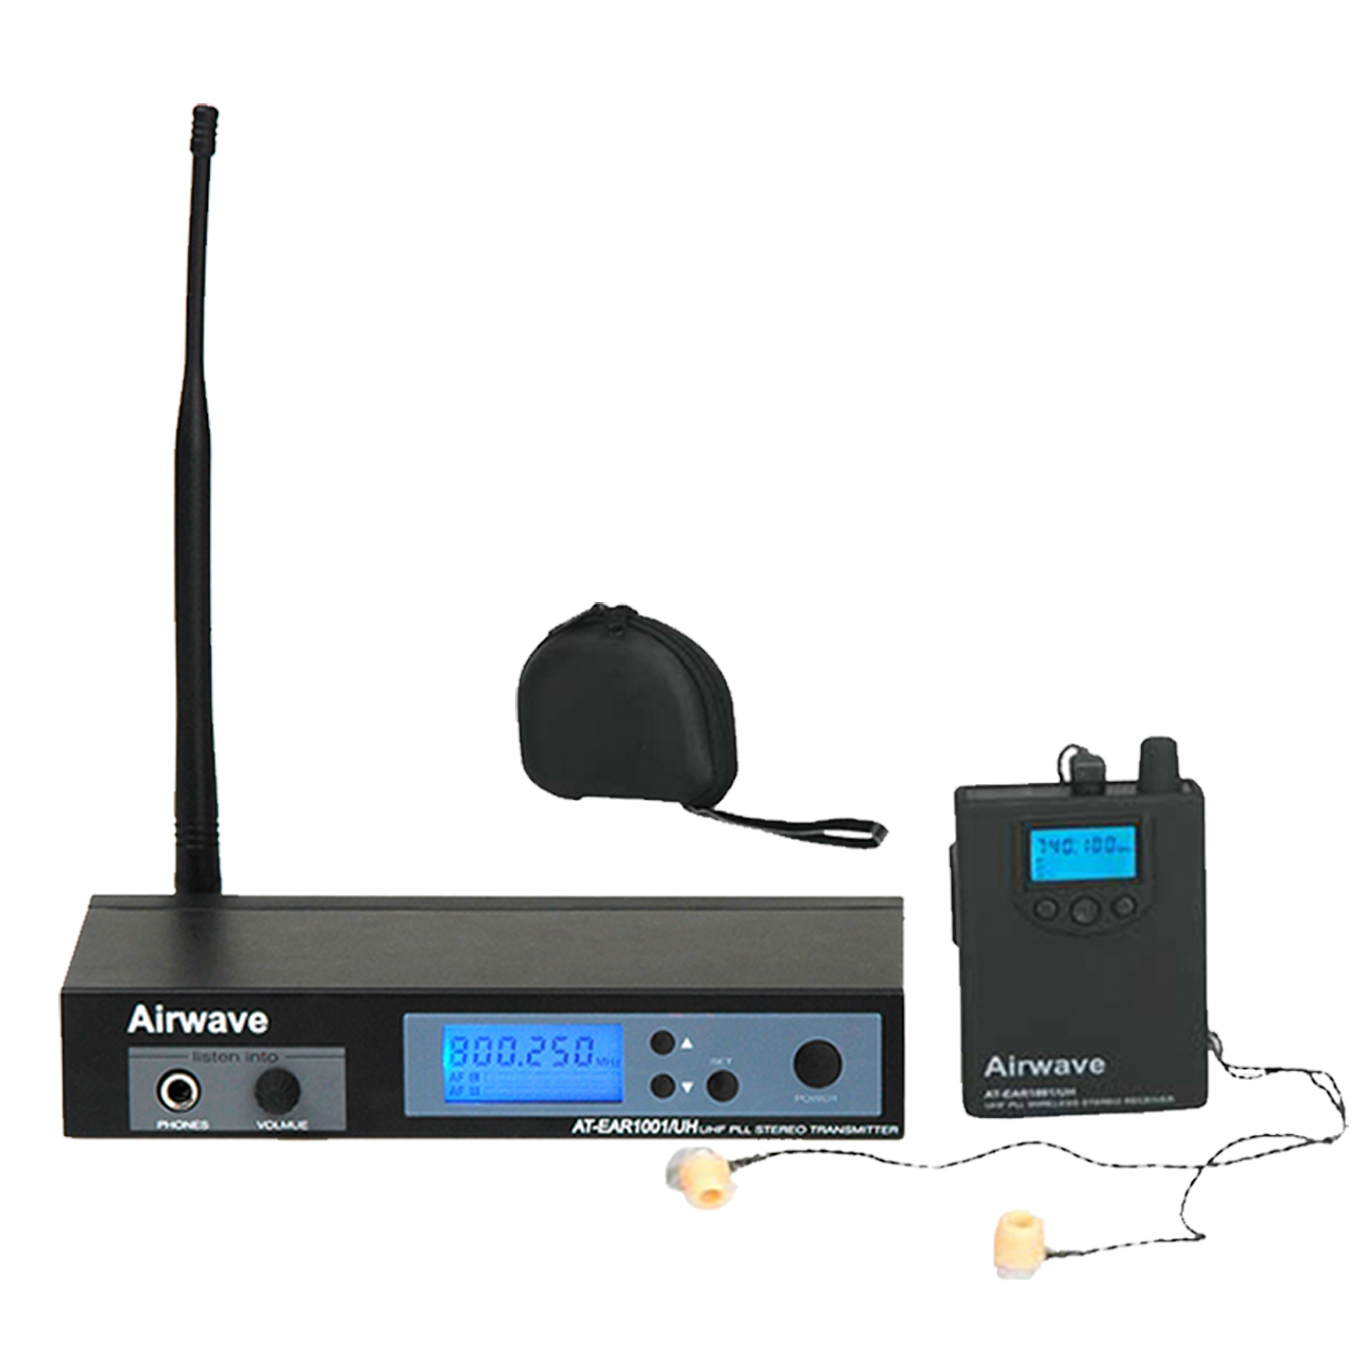 AT Ear 1001 pro wireless ear monitor